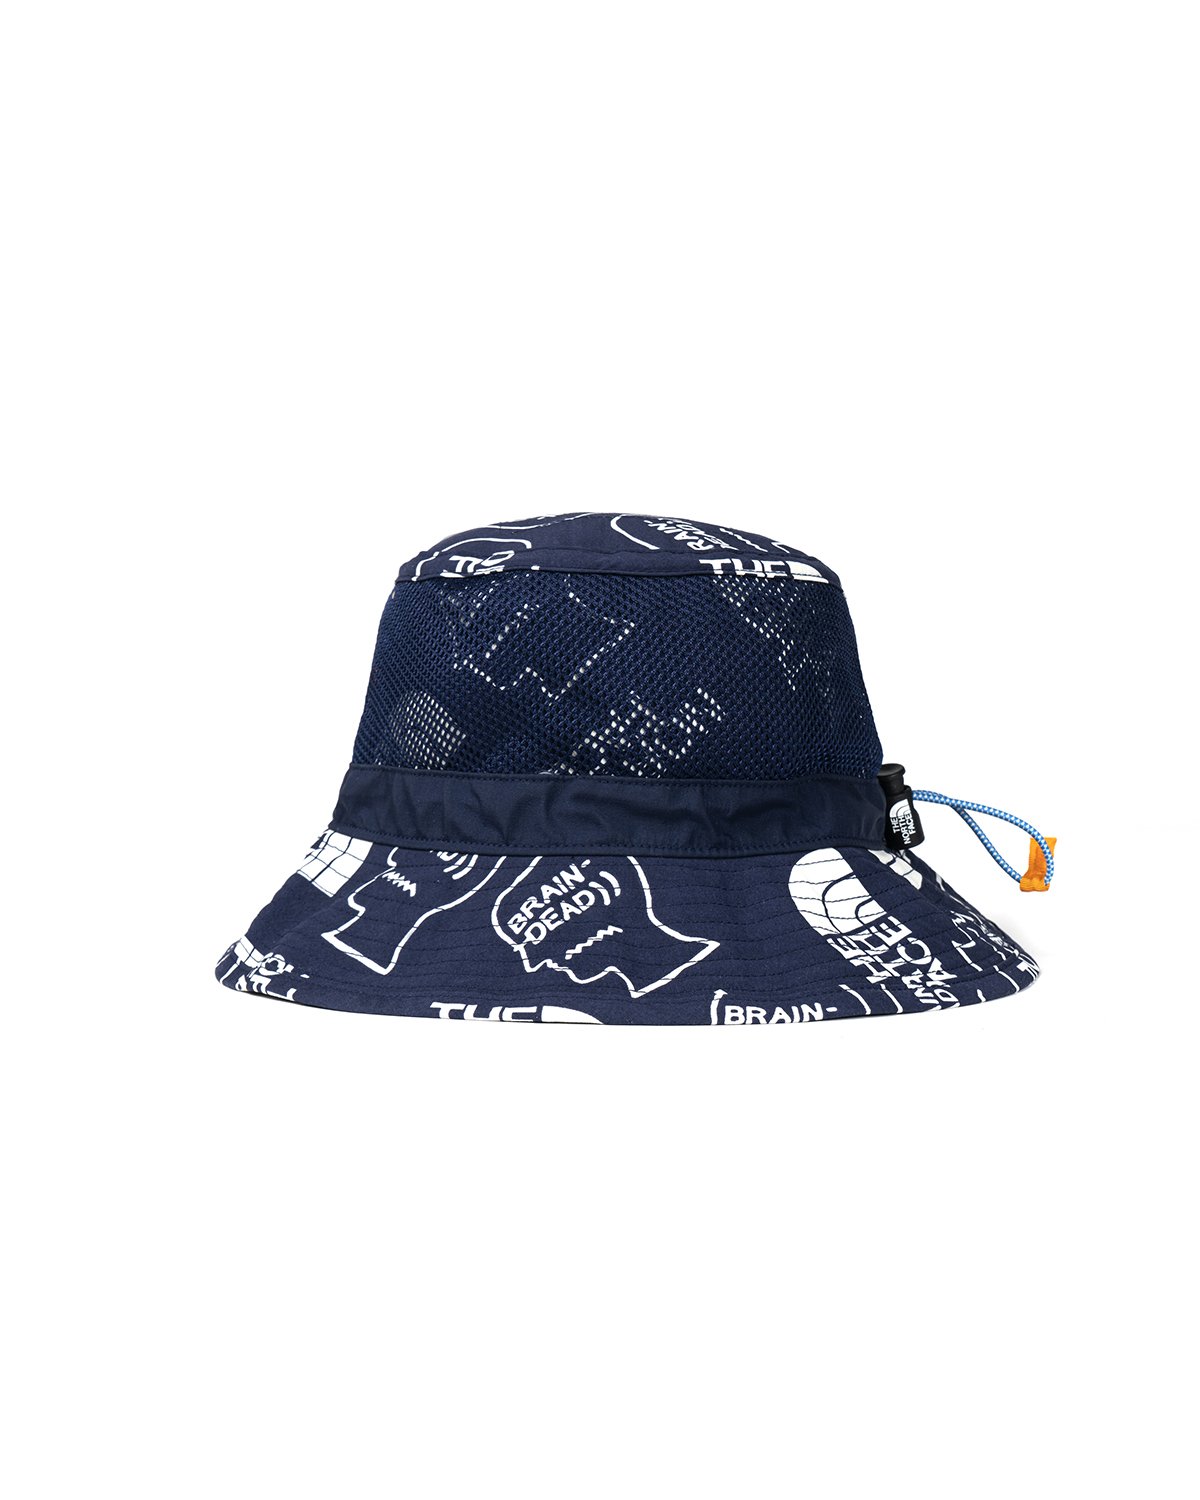 Nike x Grateful Dead Bucket Hat Blue - SS20 - US